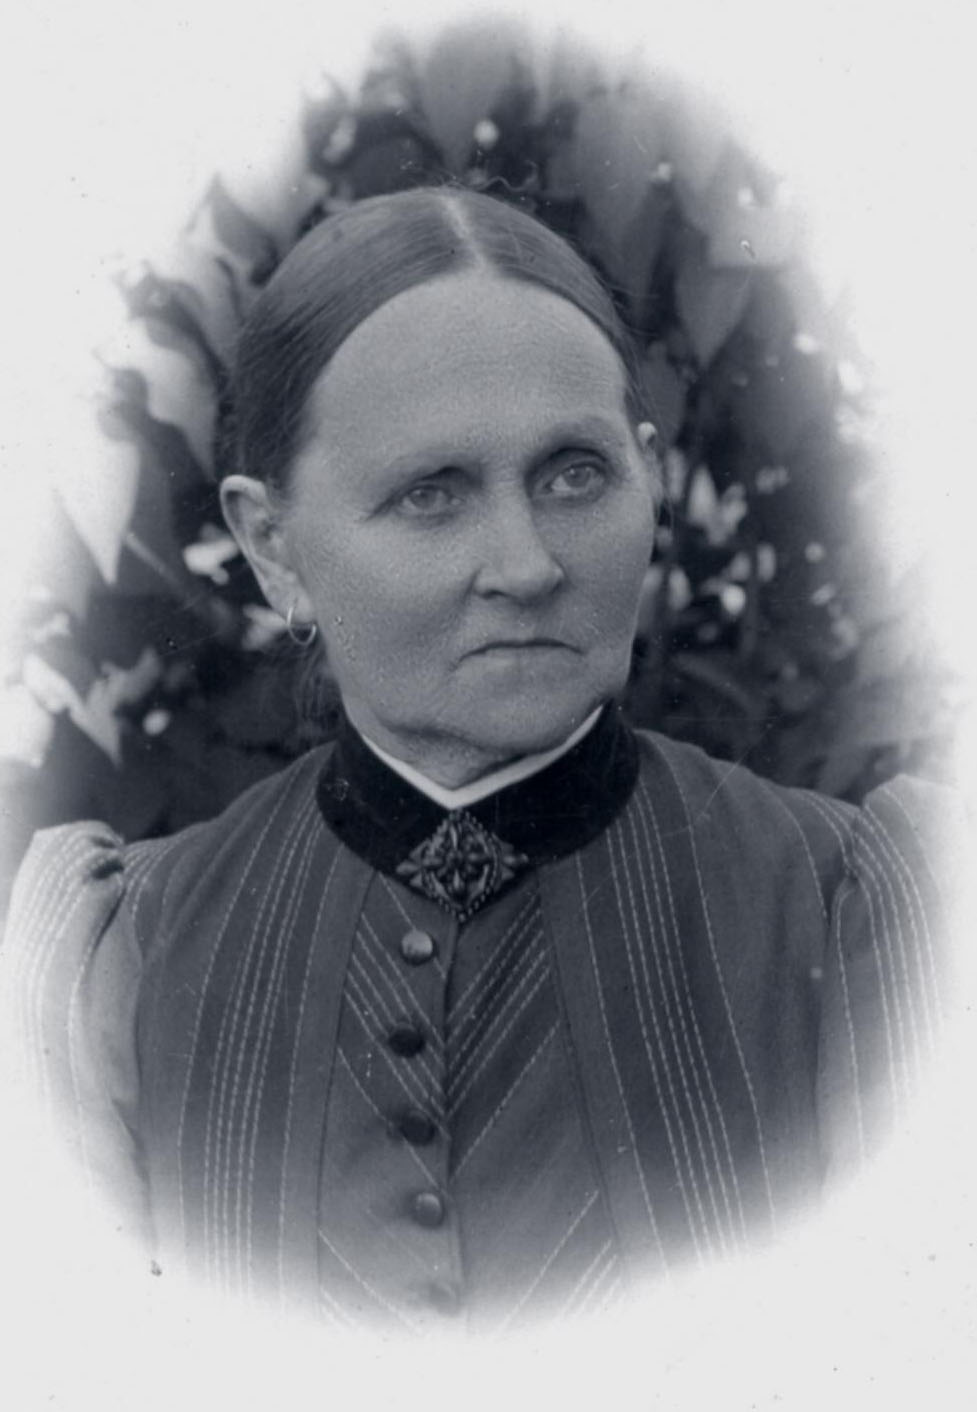 P bild finns hustrun Carolina Stlnacke gift Tilander (1827-1899) i Sannerud, Tived sn (R). Hennes son Alfred Stlnacke fdd 1853, utvandrade till Baku, Azerbajdzjan. Han r anfader till ttlingar som bor i Sverige och vstra Georgien